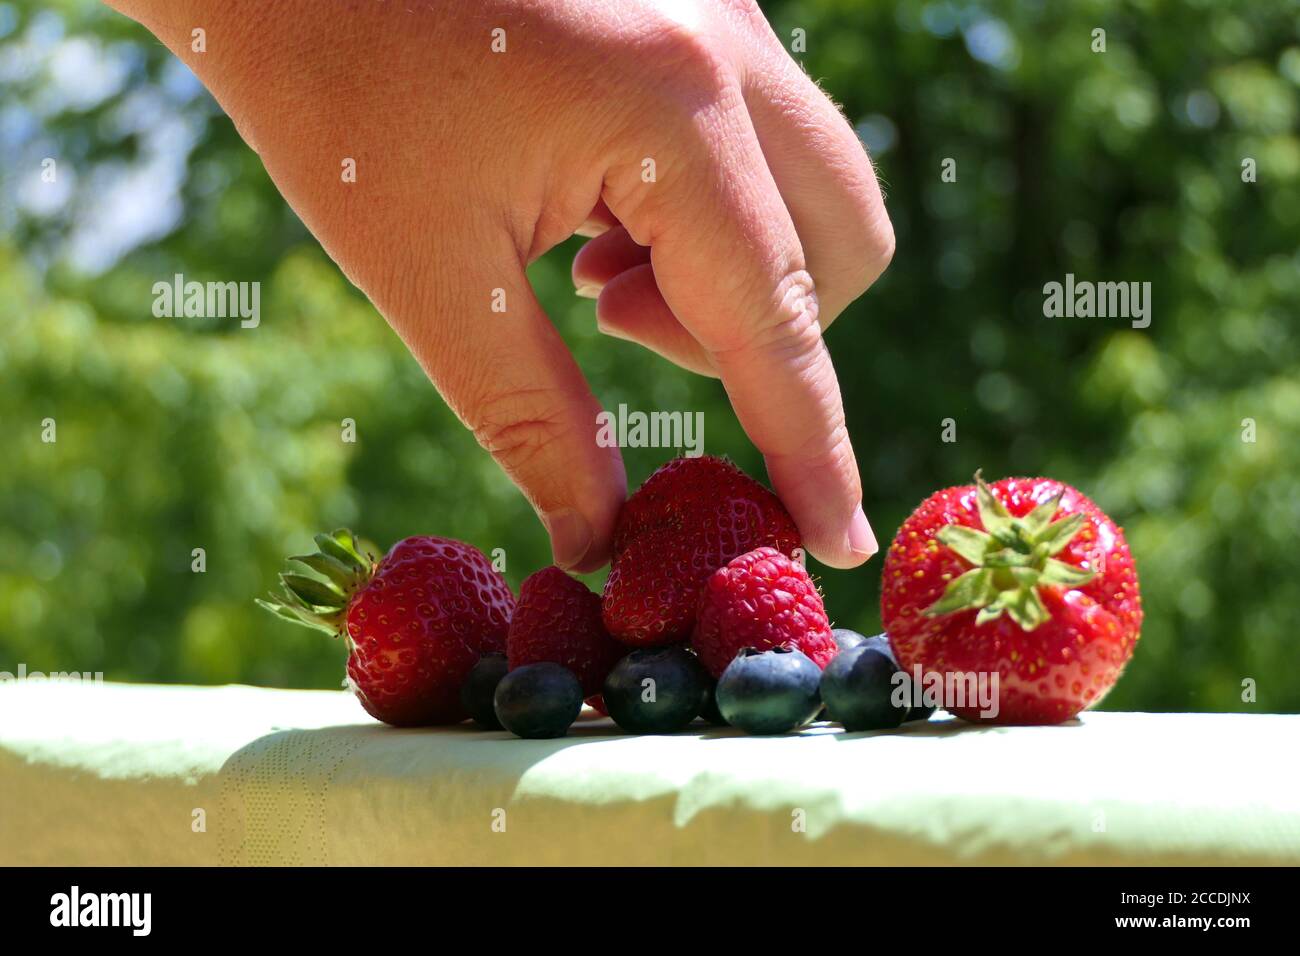 Nahaufnahme der Hand einer Person, die eine Erdbeere aus einem herausnimmt Gruppe von gemischten Beeren im Freien Stockfoto